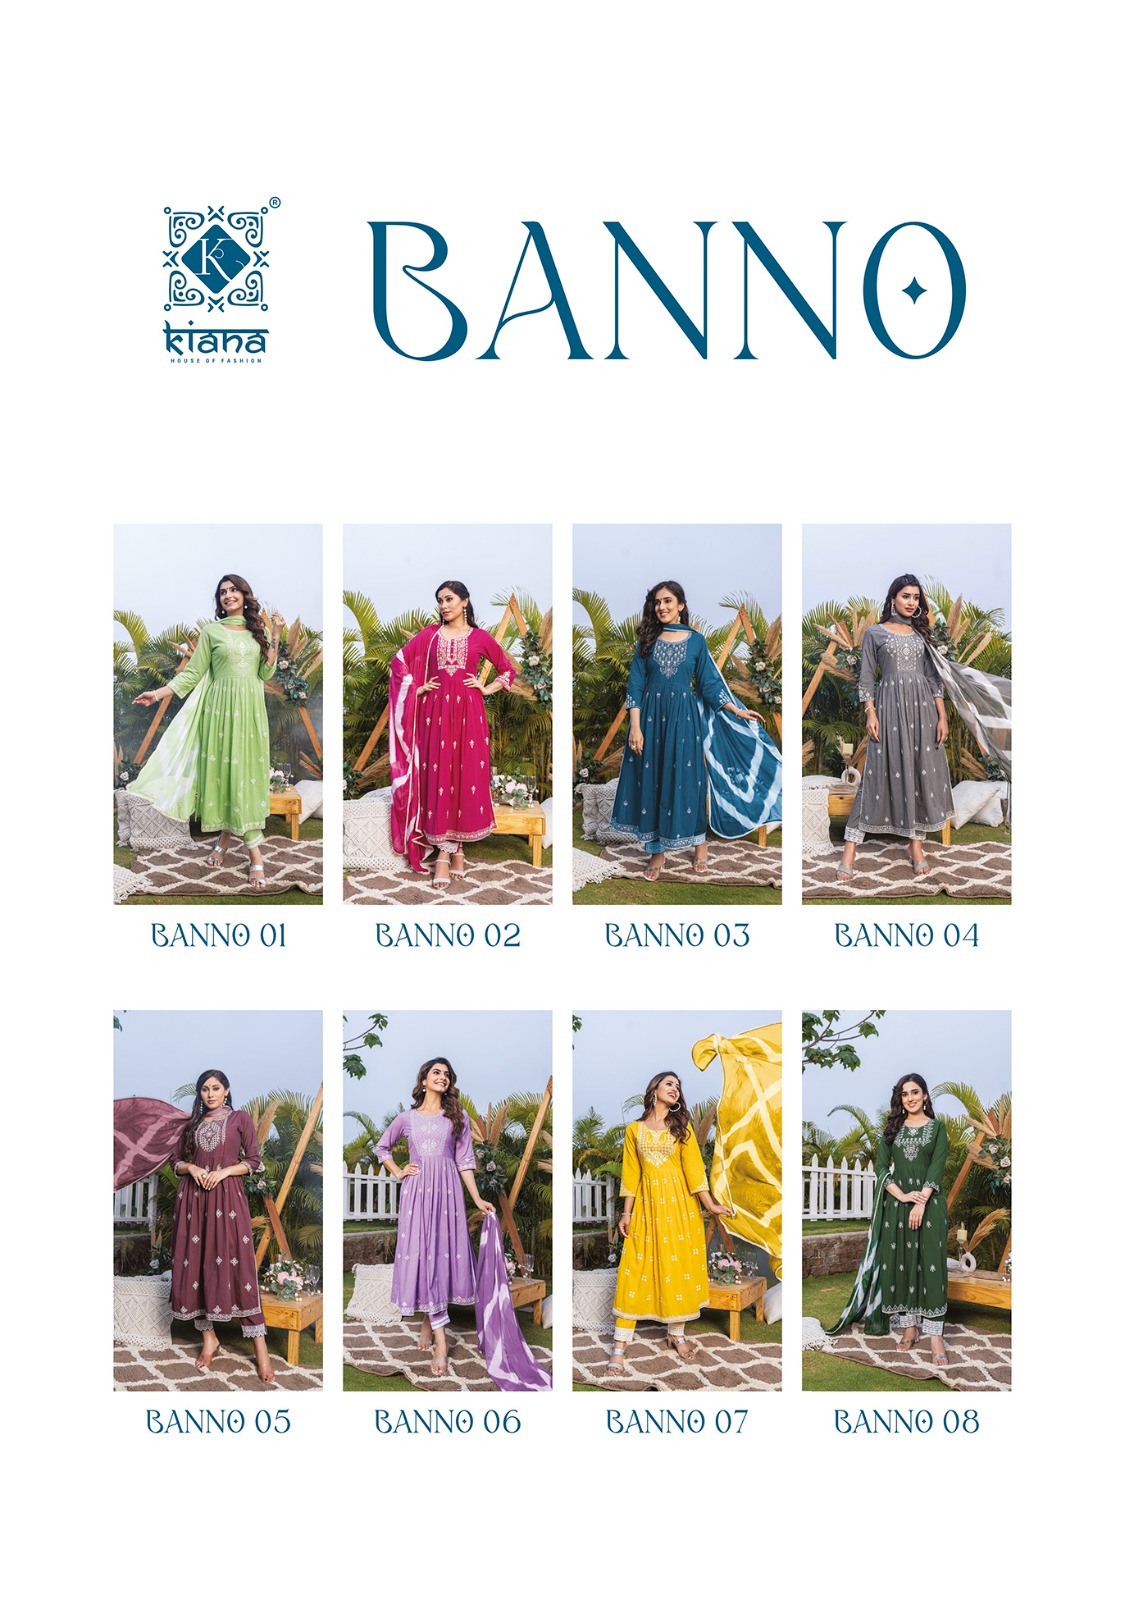 Kiana Fashion Banno 01-08